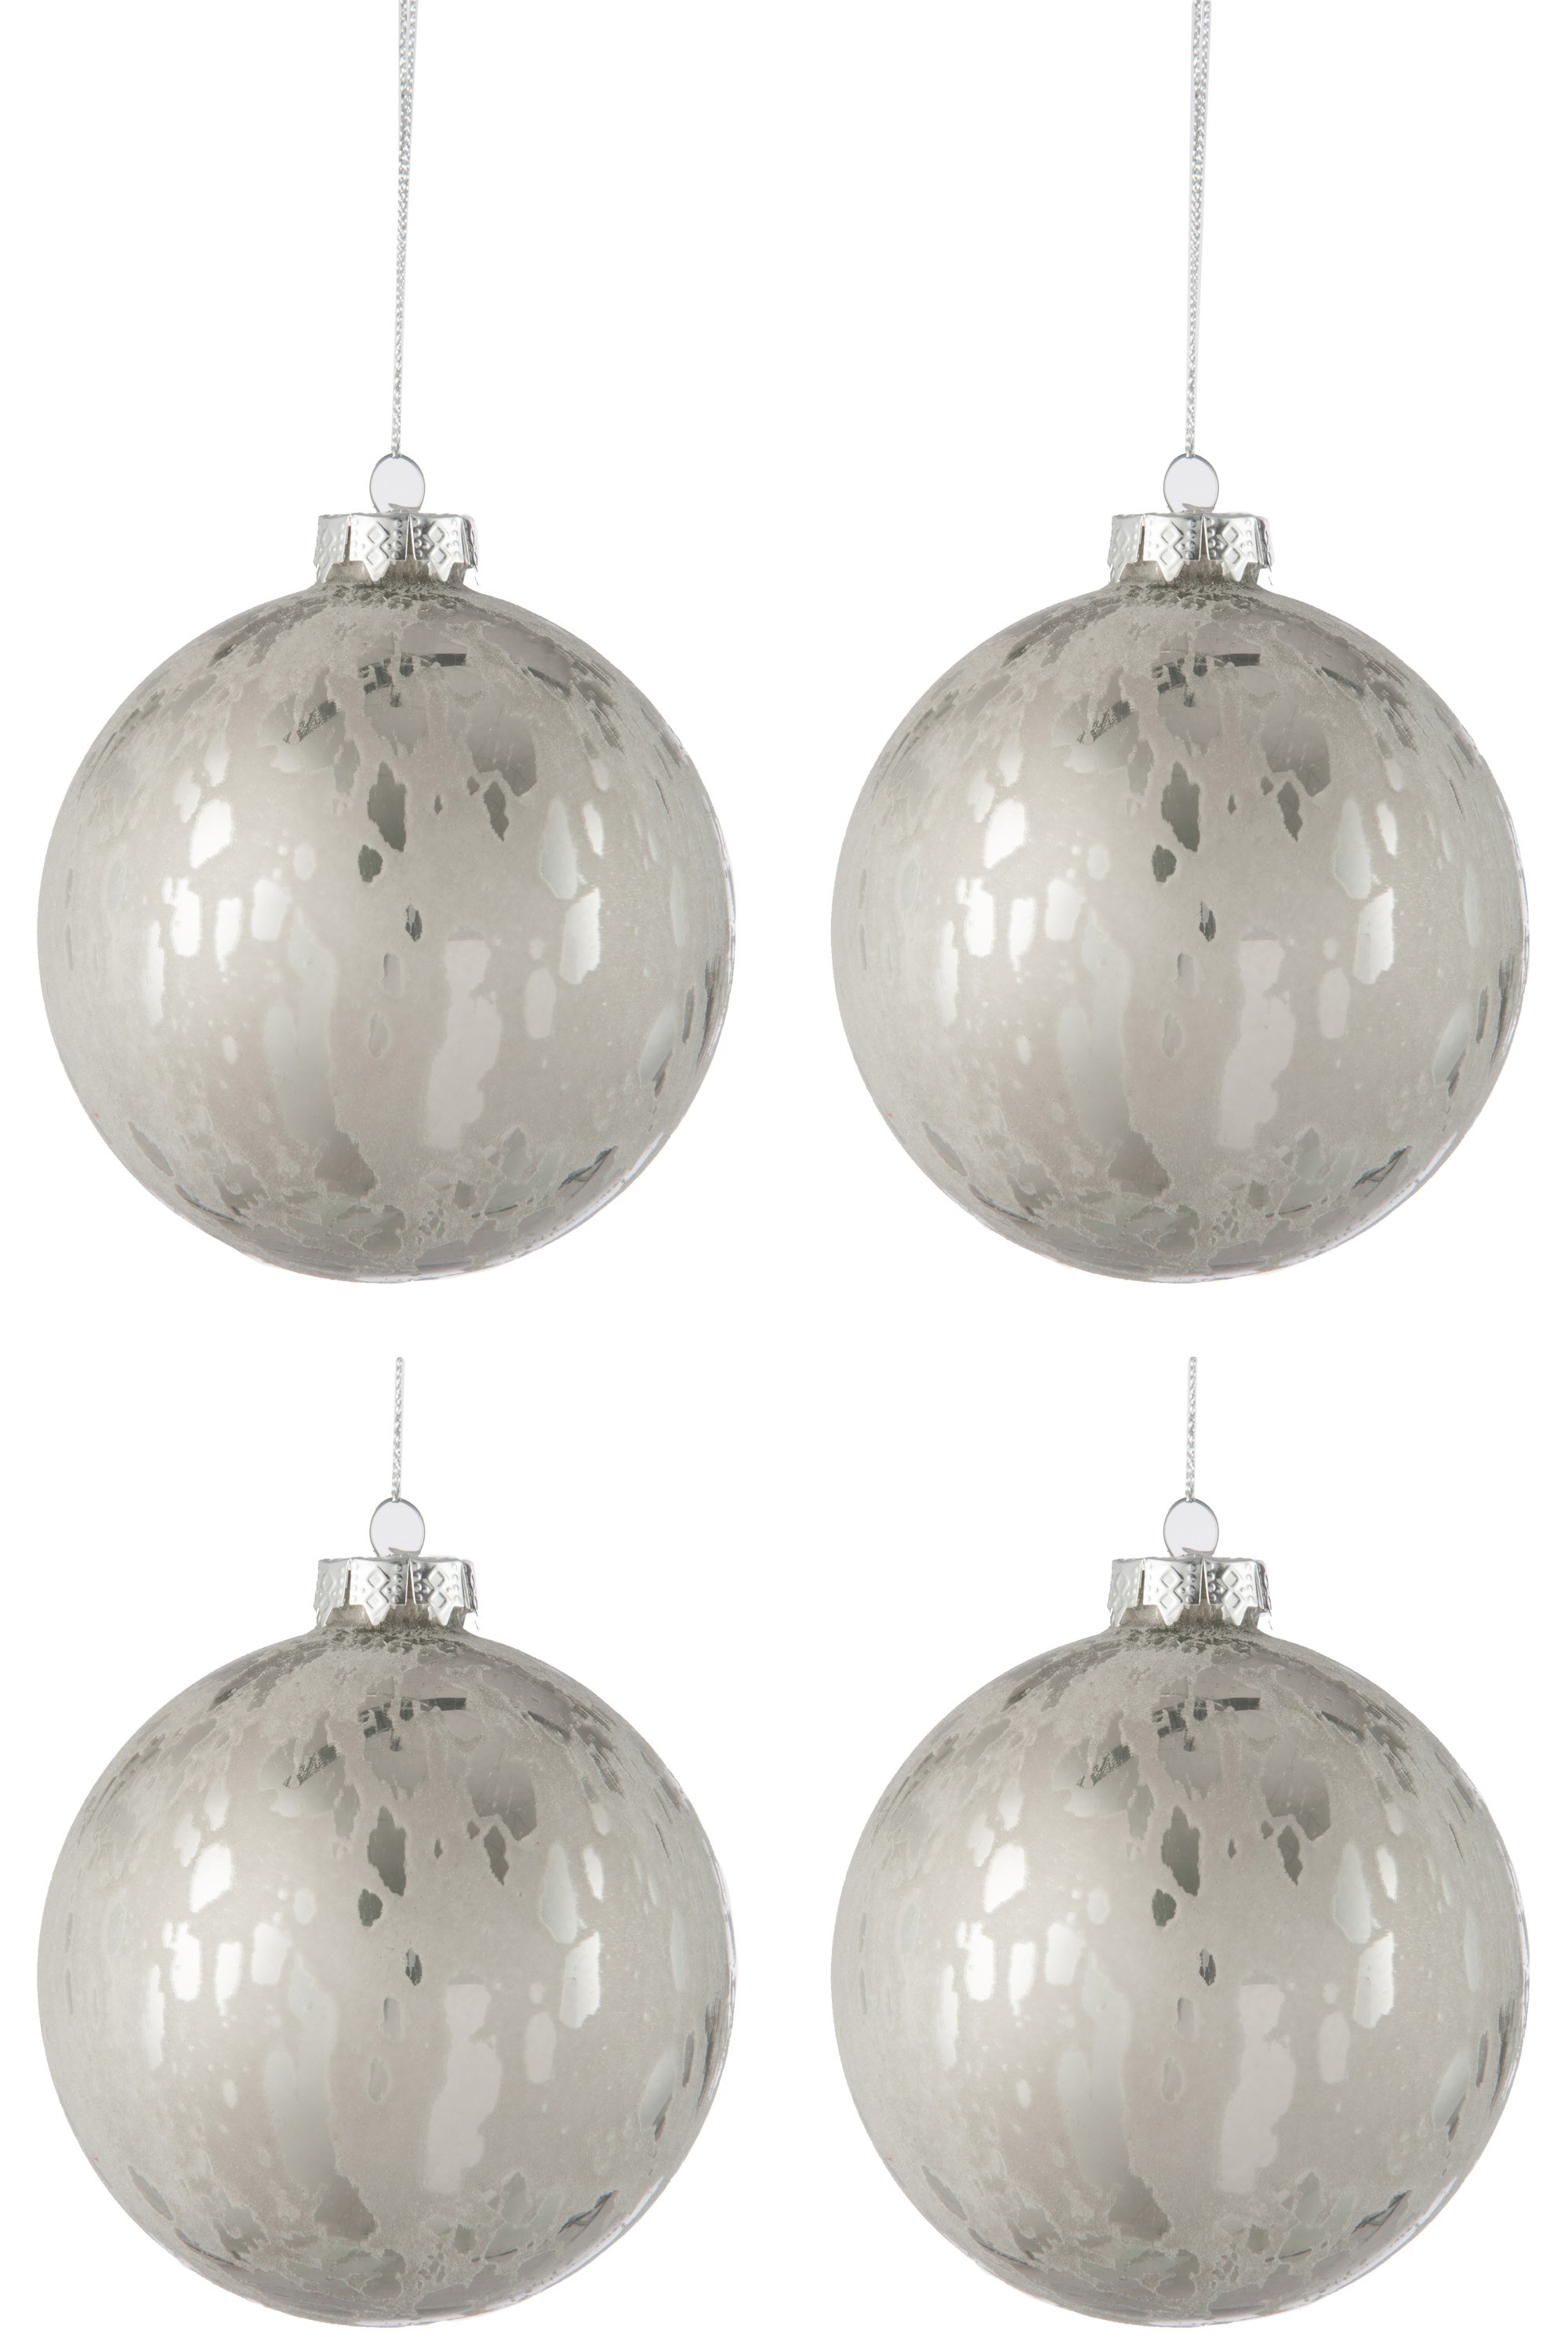 Sada stříbrných vánočních koulí s matnou patinou L ( 4ks) - 10*10*10 cm J-Line by Jolipa